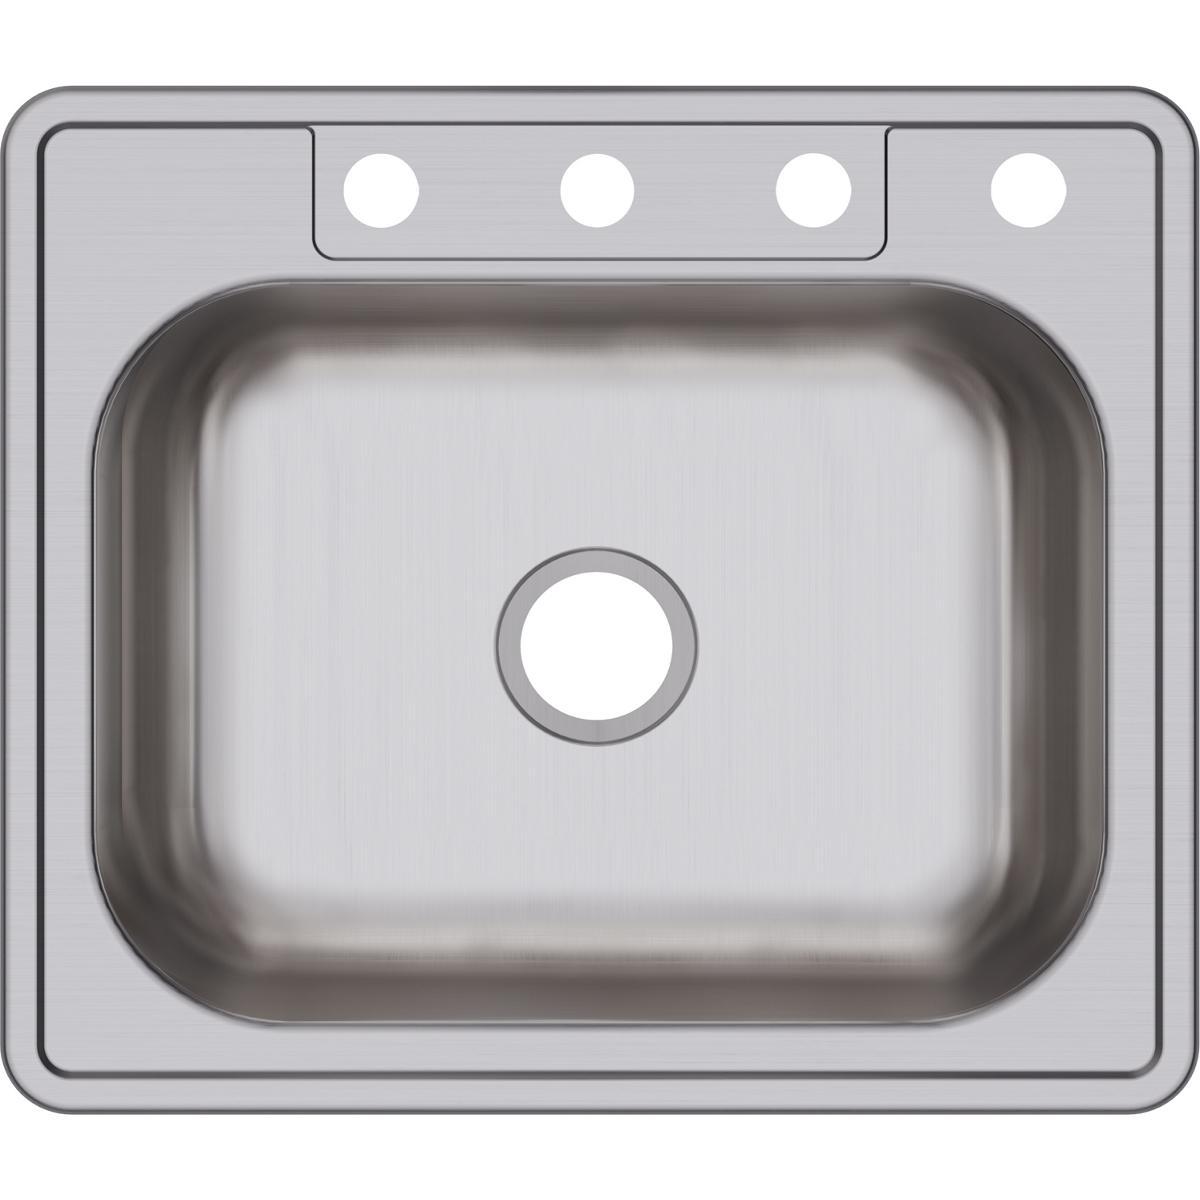 Elkay Dayton Stainless Steel 25" x 21-1/4" x 6-9/16", Single Bowl Drop-in Sink-DirectSinks